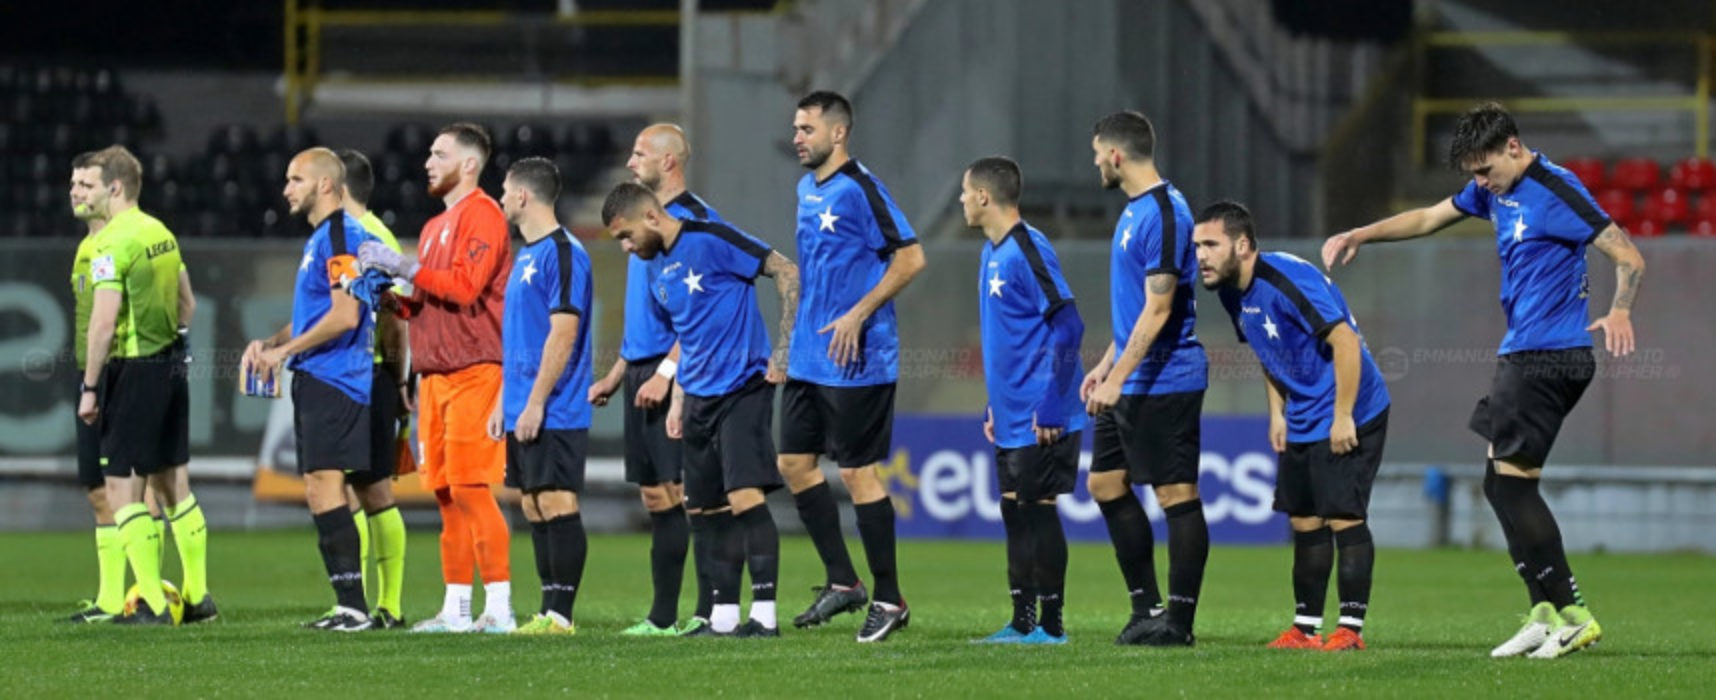 Bisceglie calcio, slitta l’orario del match contro il Catania